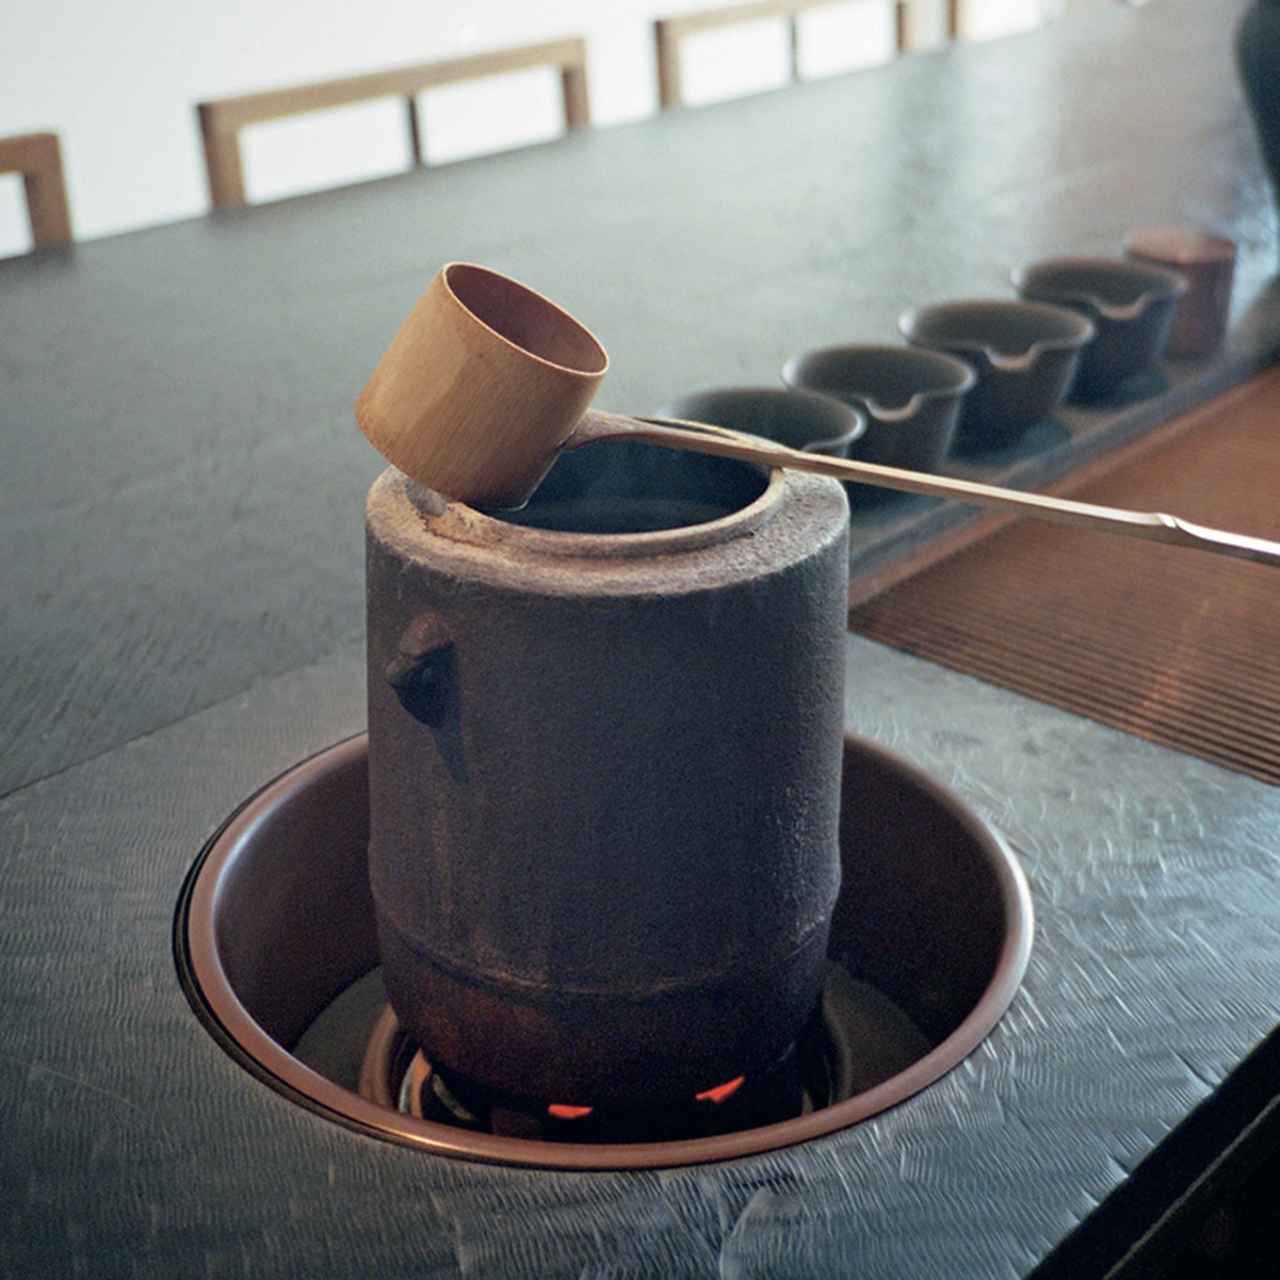 日本茶の香りが漂う店内で一服 。櫻井焙茶研究所